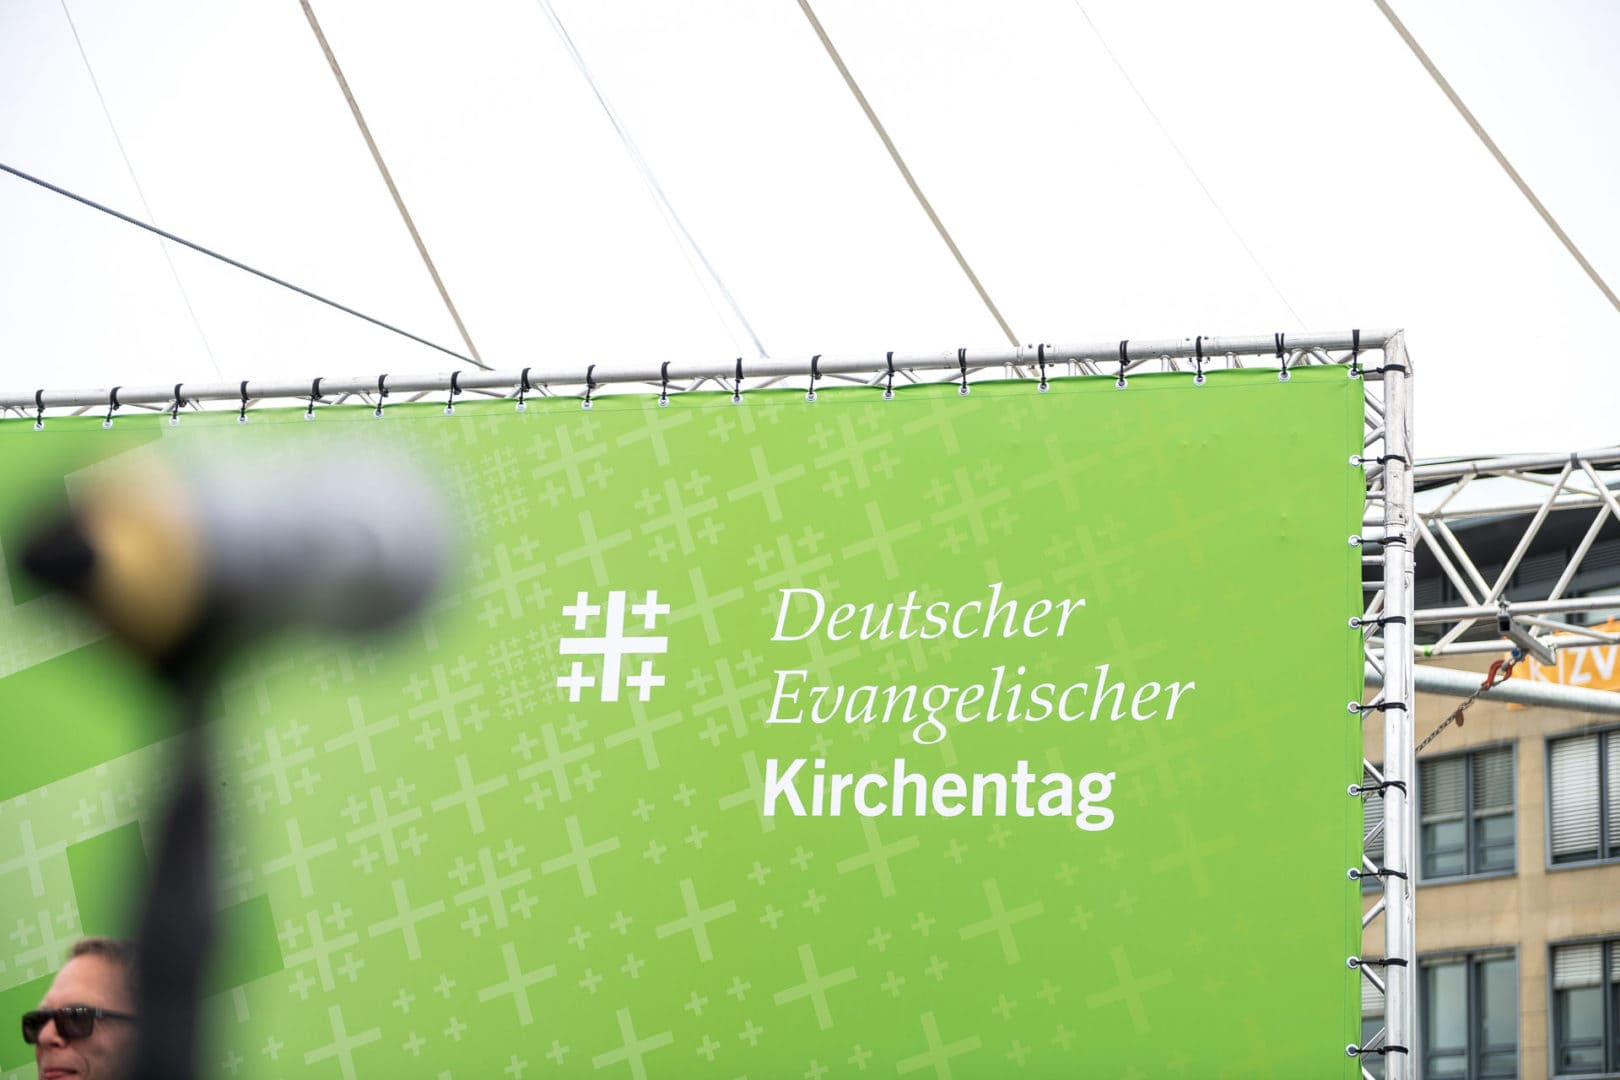 Deutscher Evangelischer Kirchentag 2019 in Dortmund